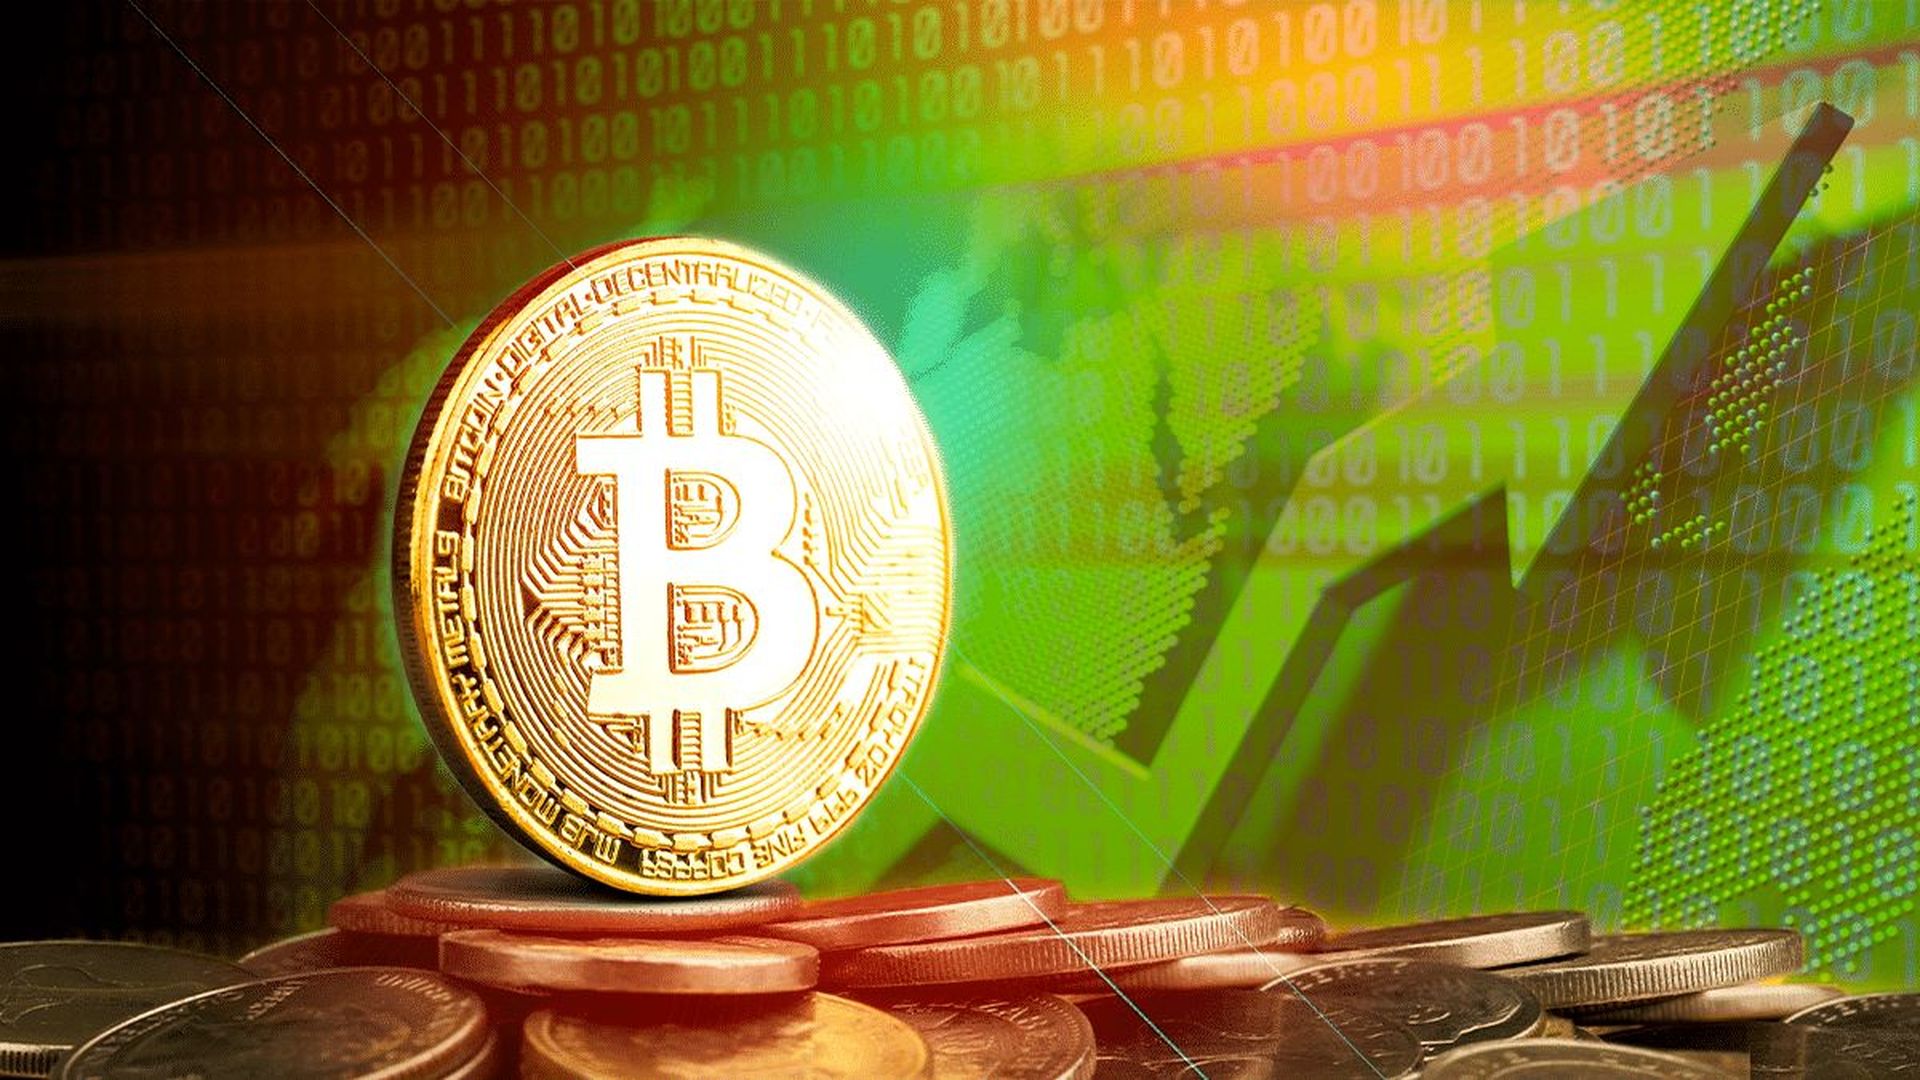 Globalny rynek kryptowalut przeżywa trend spadkowy, a nowe prawo dotyczące Bitcoina w Republice Środkowoafrykańskiej utoruje krajowi drogę do wykorzystania popularnego krypto jako prawnego środka płatniczego.